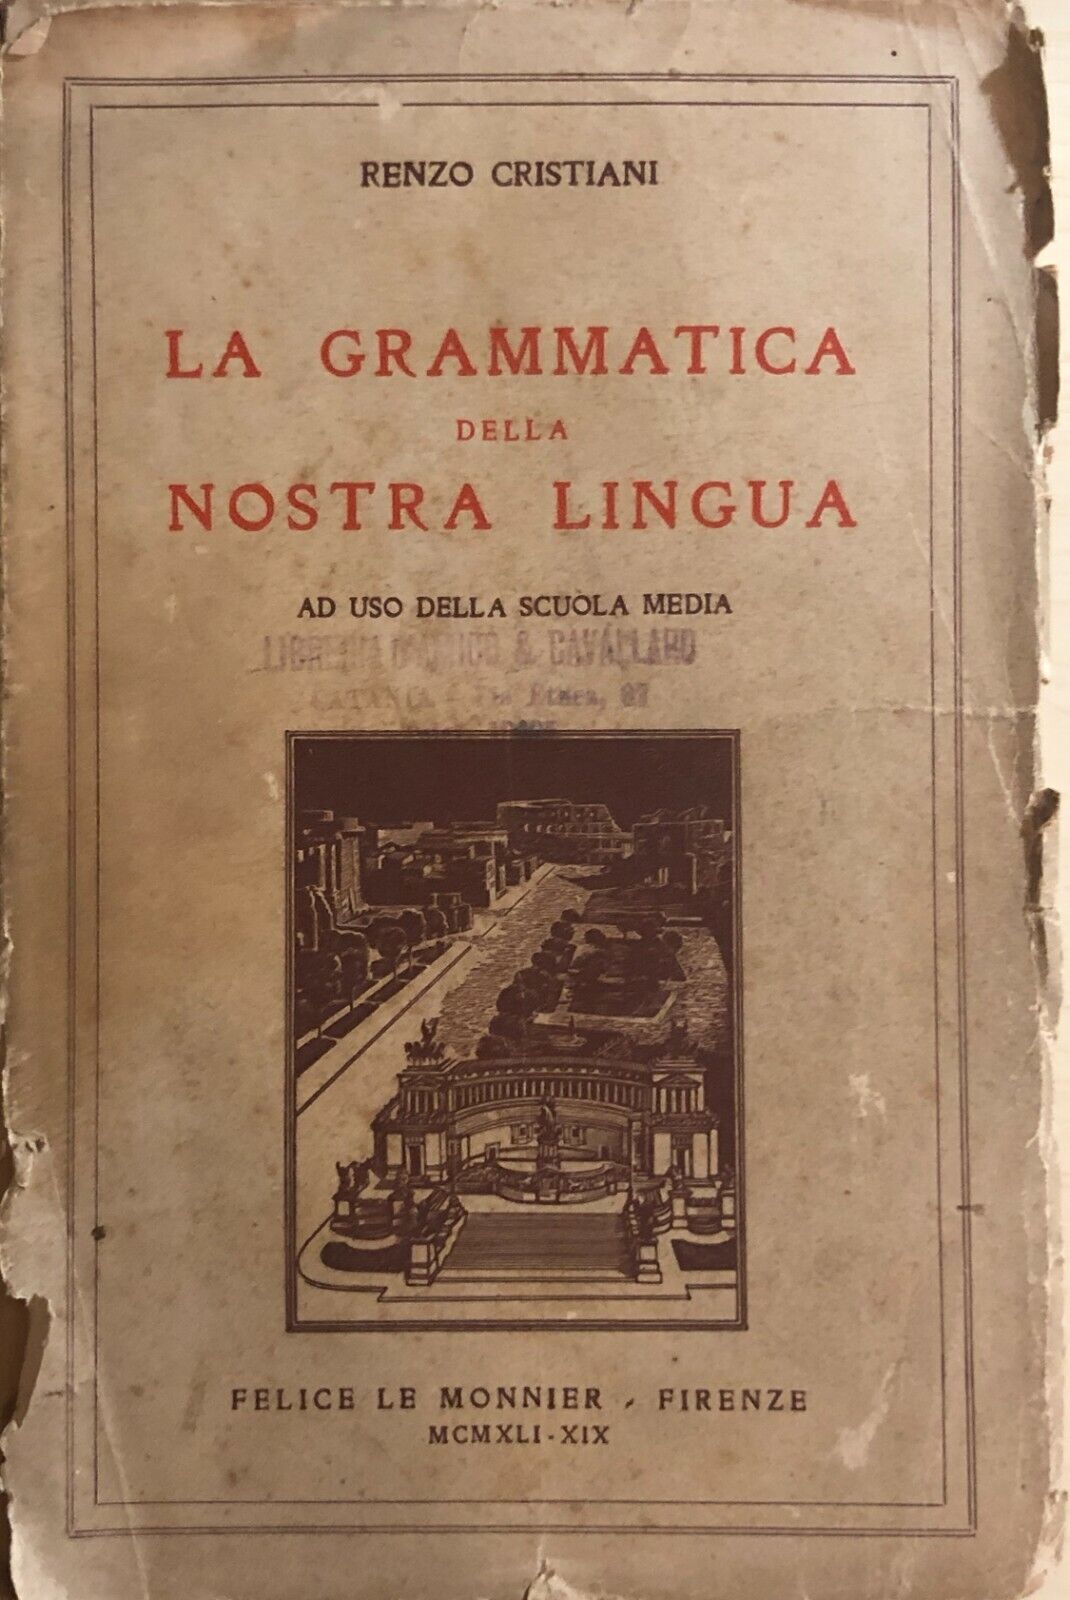 La grammatica della nostra lingua  di Renzo Cristiani, 1961, Le Monnier